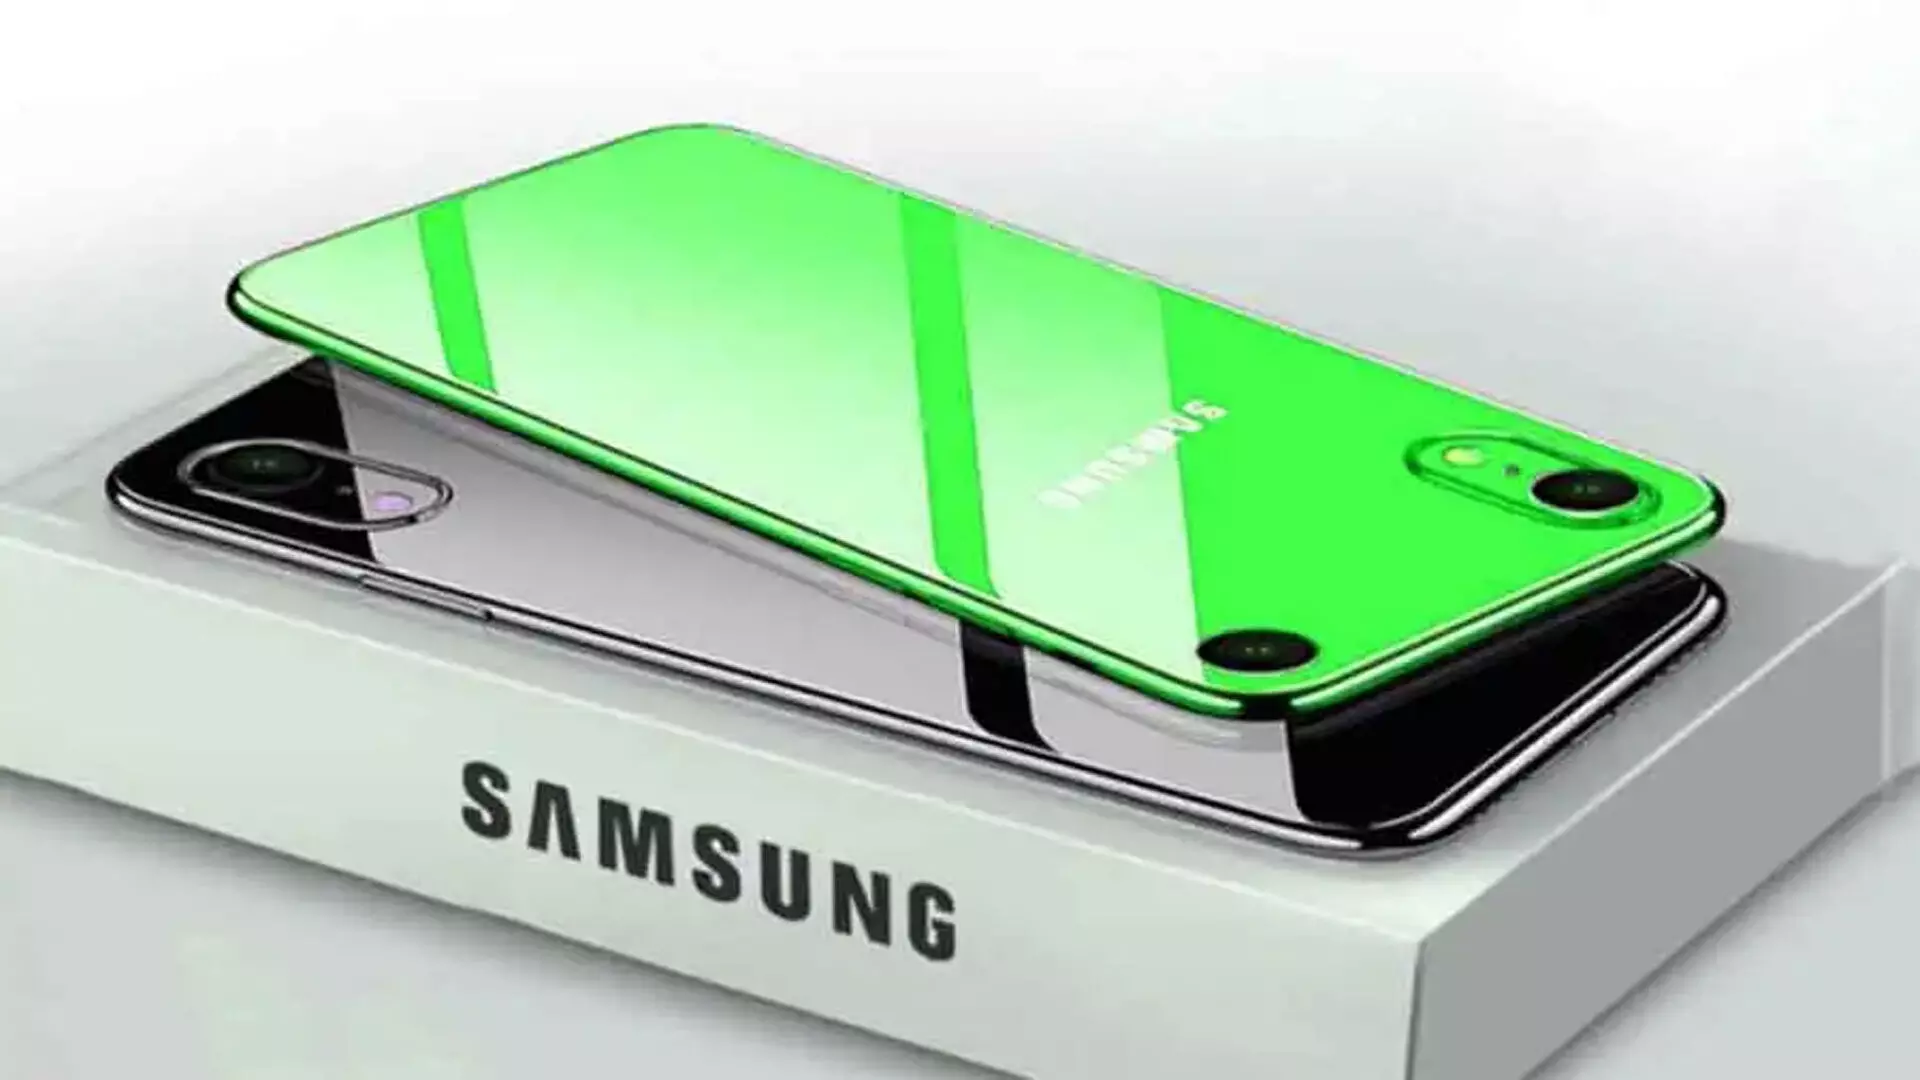 Samsung Galaxy Oxygen: इसमें मिल रही 8000mAh की पॉवरफुल बैटरी, साथ में 16GB RAM